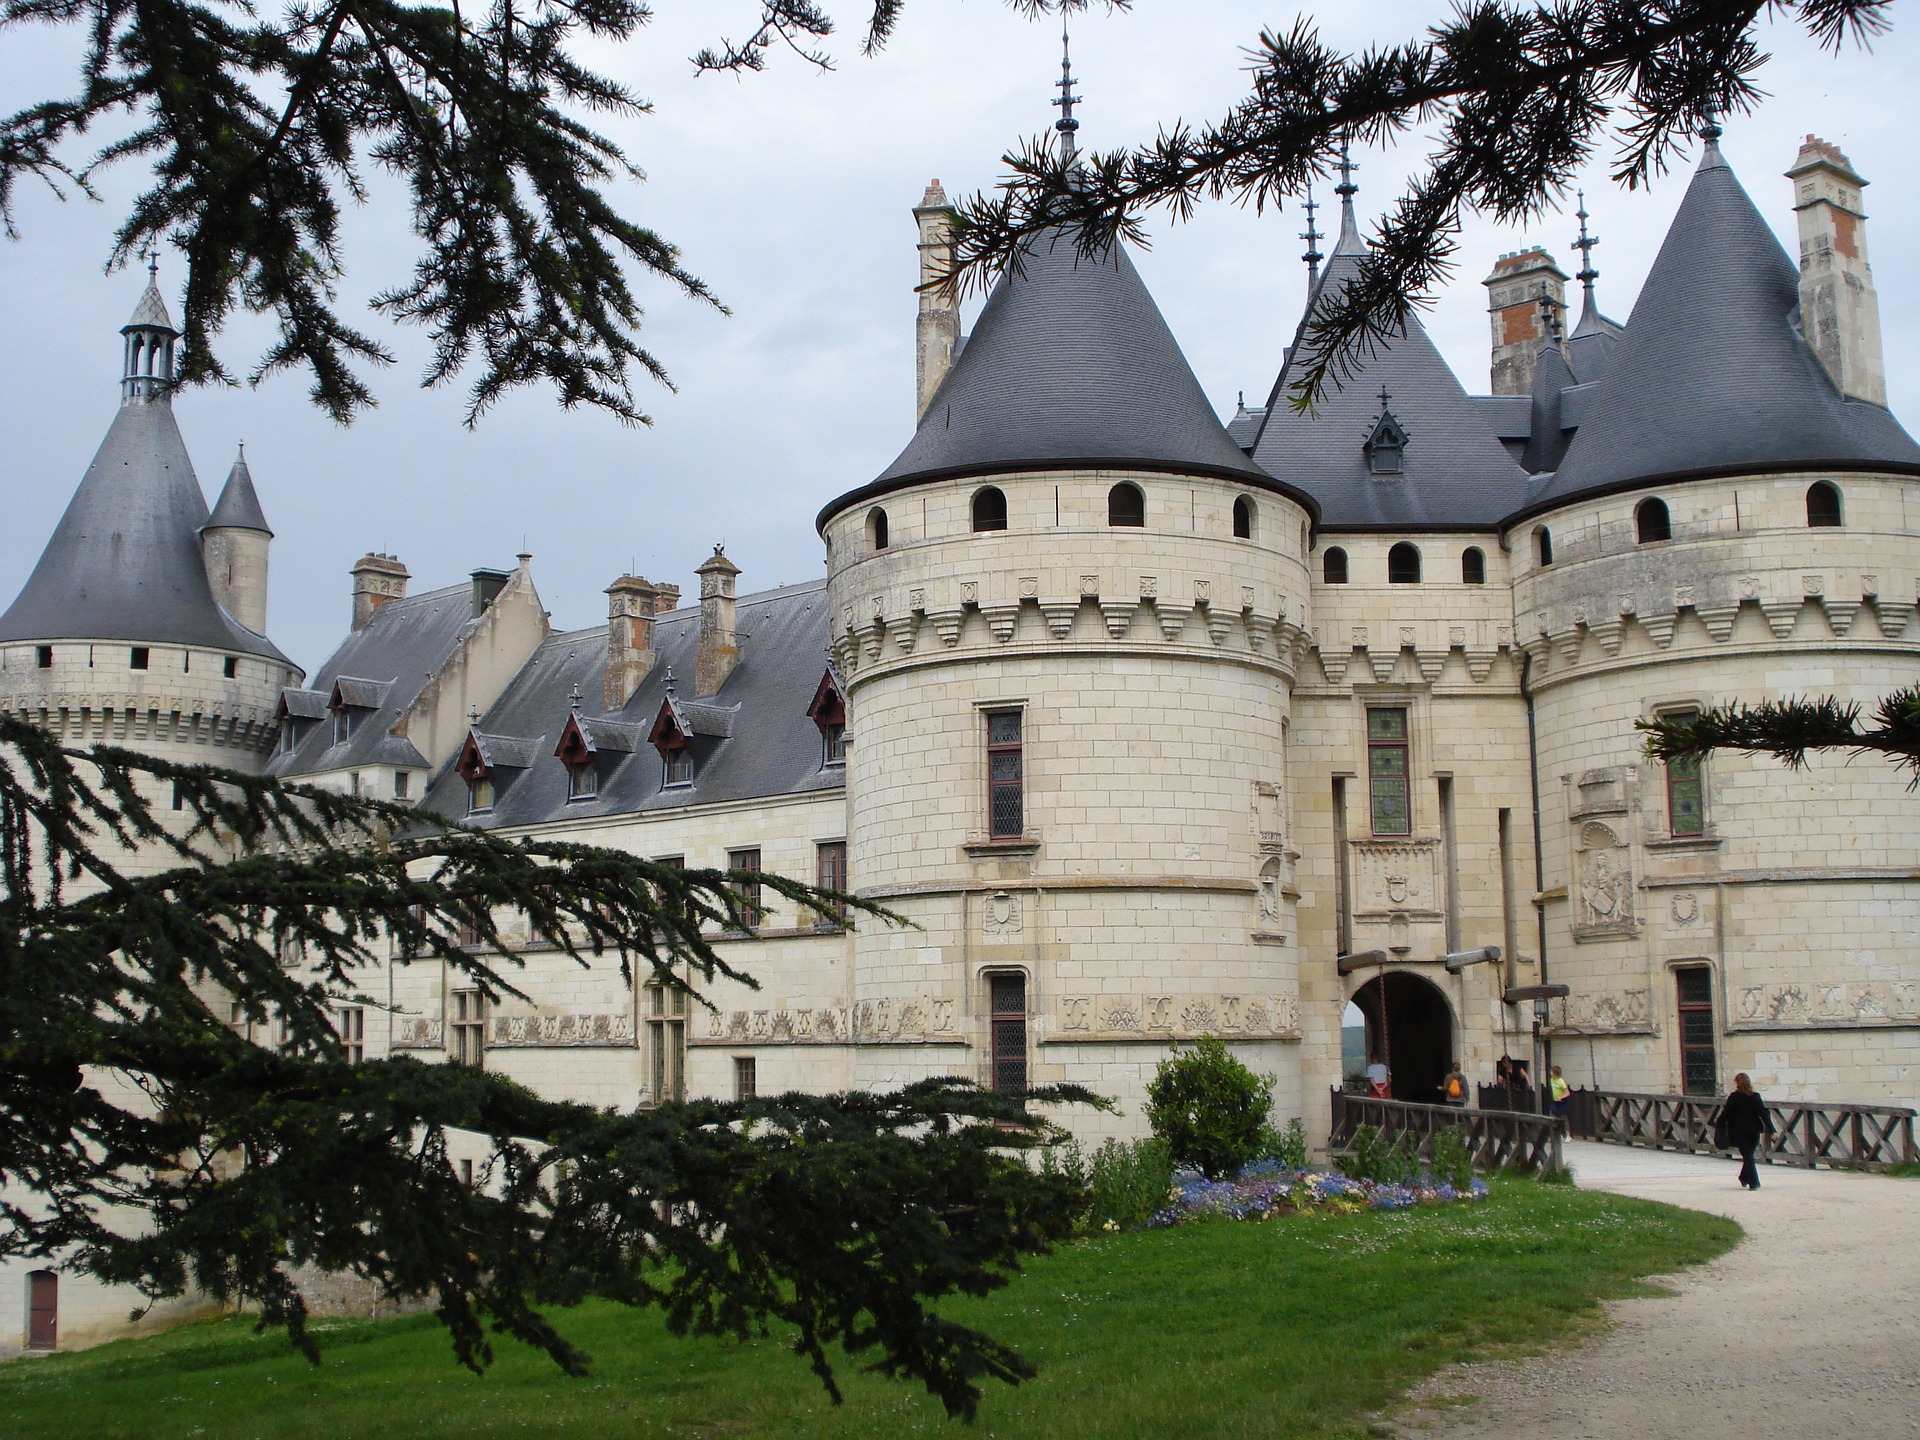  Château Chaumont-sur-Loire